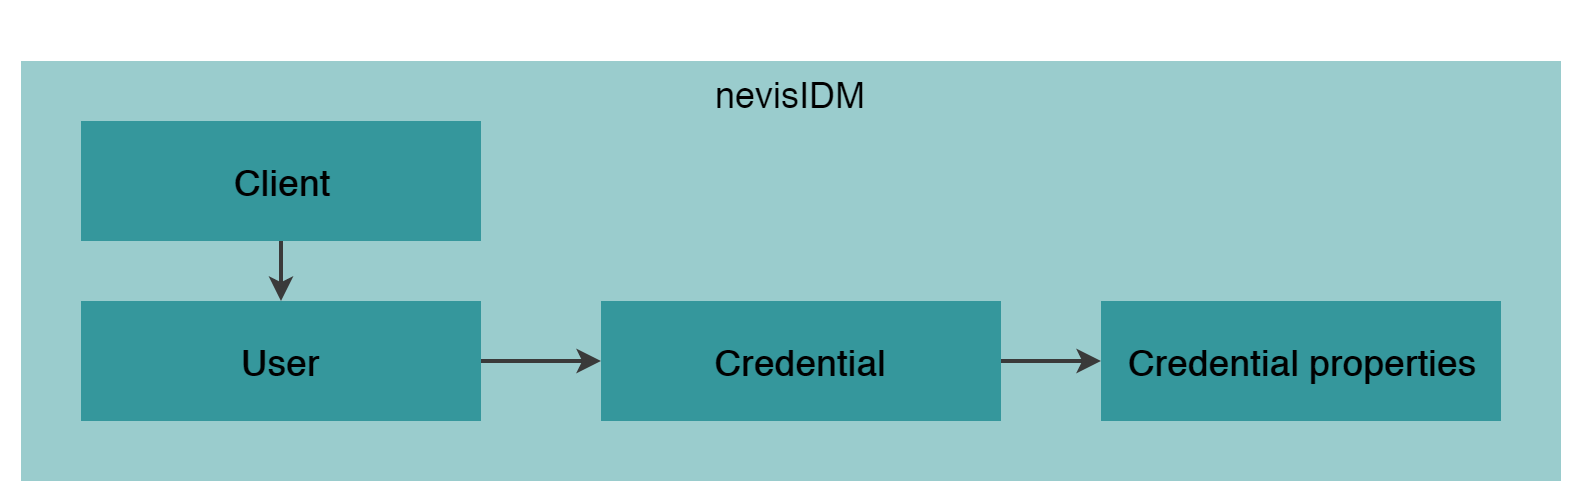 High level nevisIDM data model